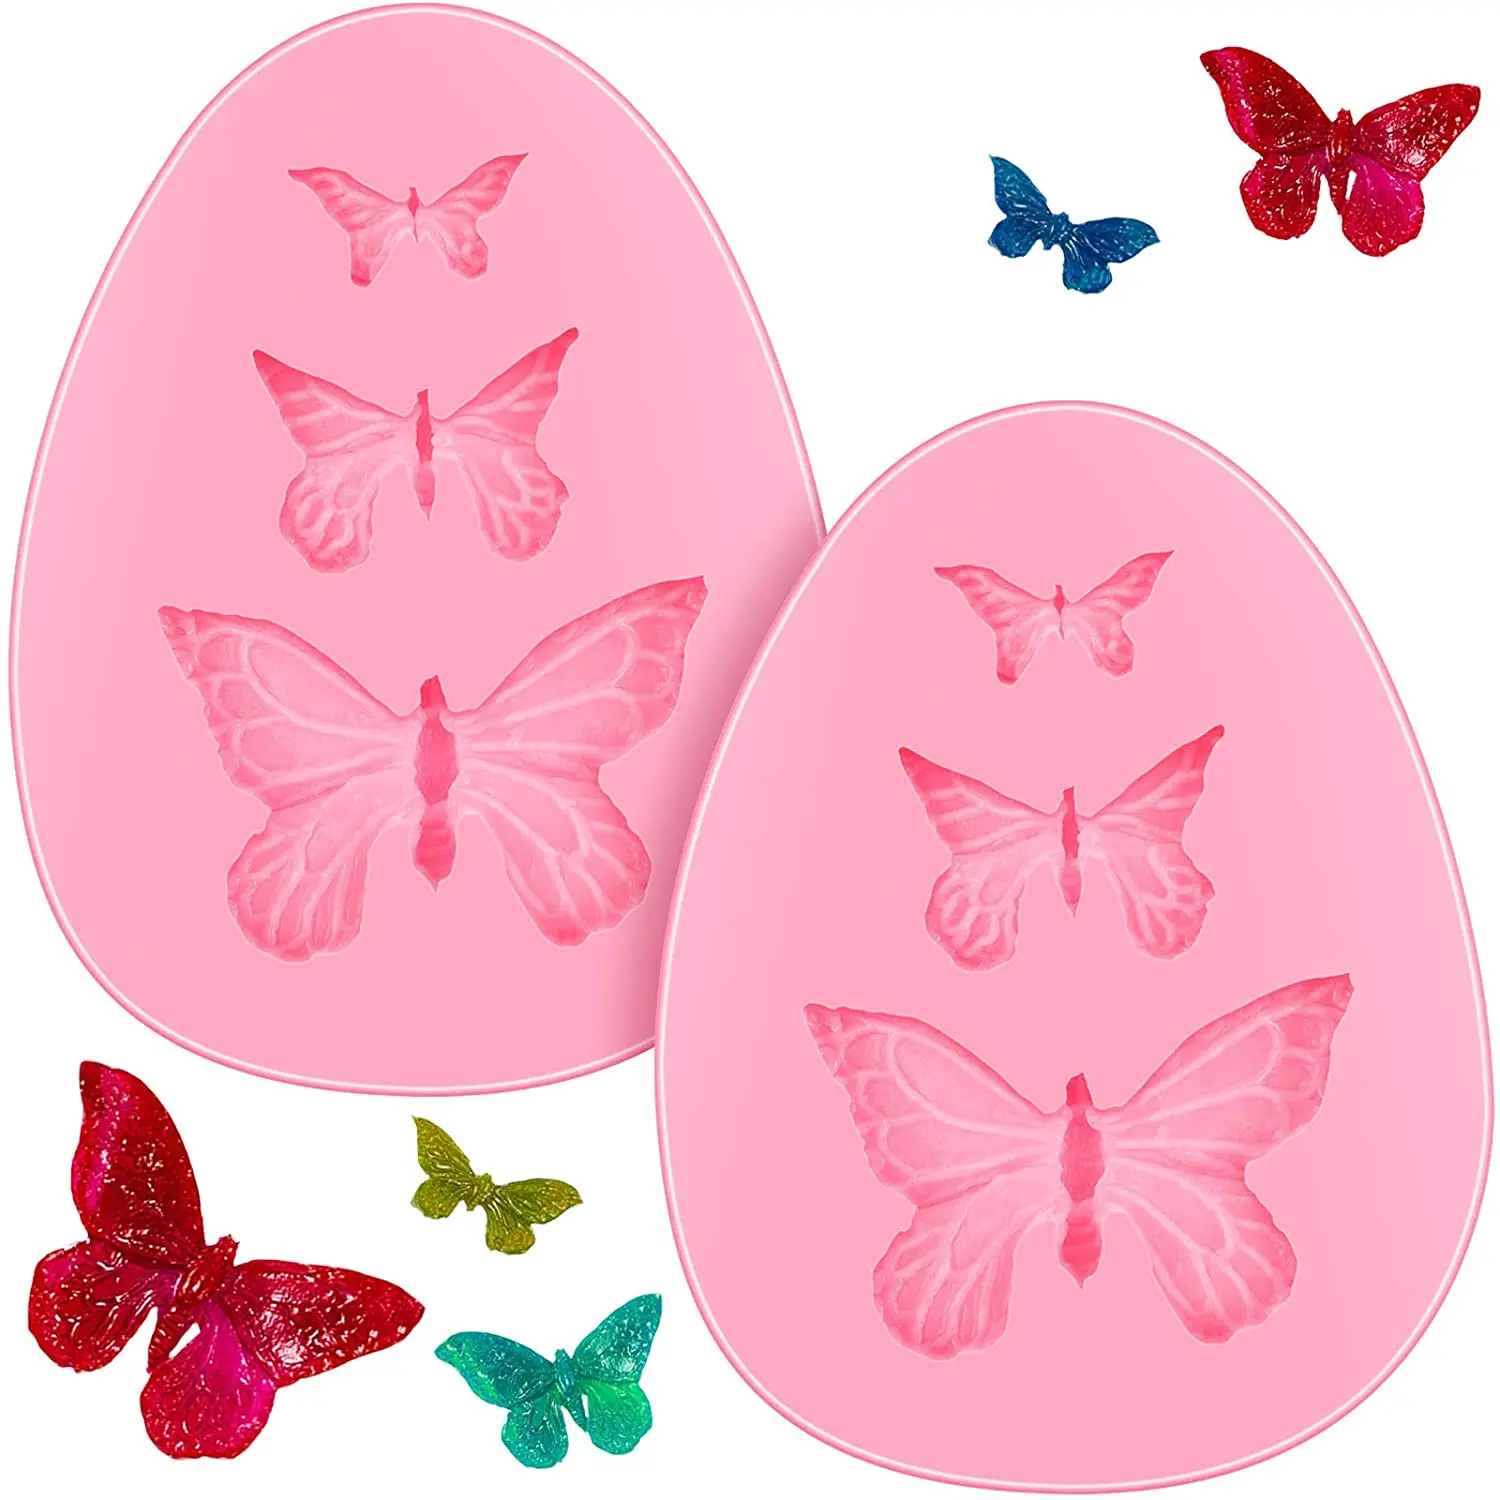 diseño de mariposas Molde de silicona con forma de mariposa para fondant de chocolate o pasteles 